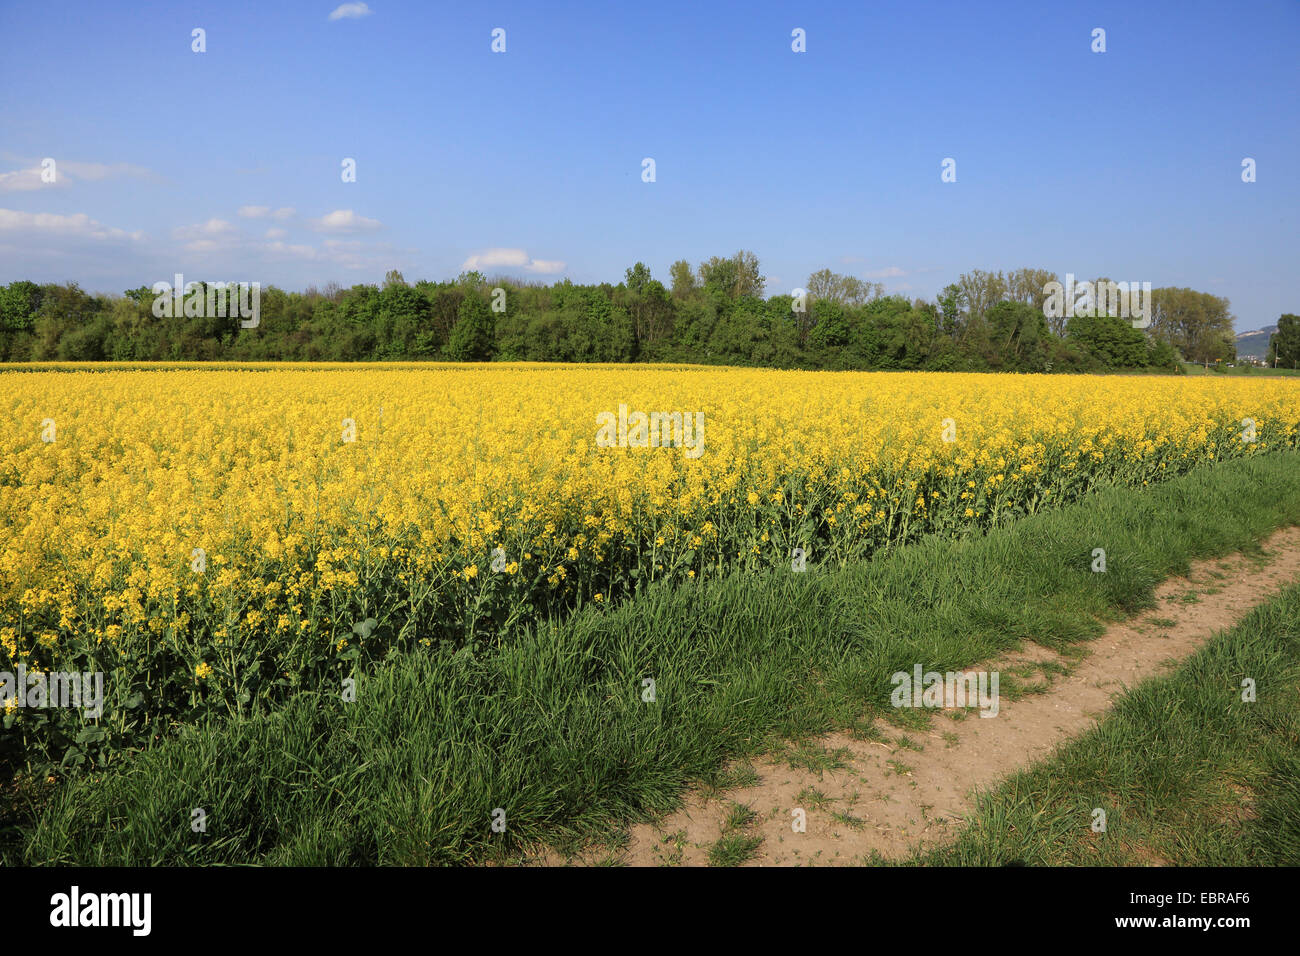 La violación, nabo (Brassica napus), floreciente campo de colza, Alemania Foto de stock